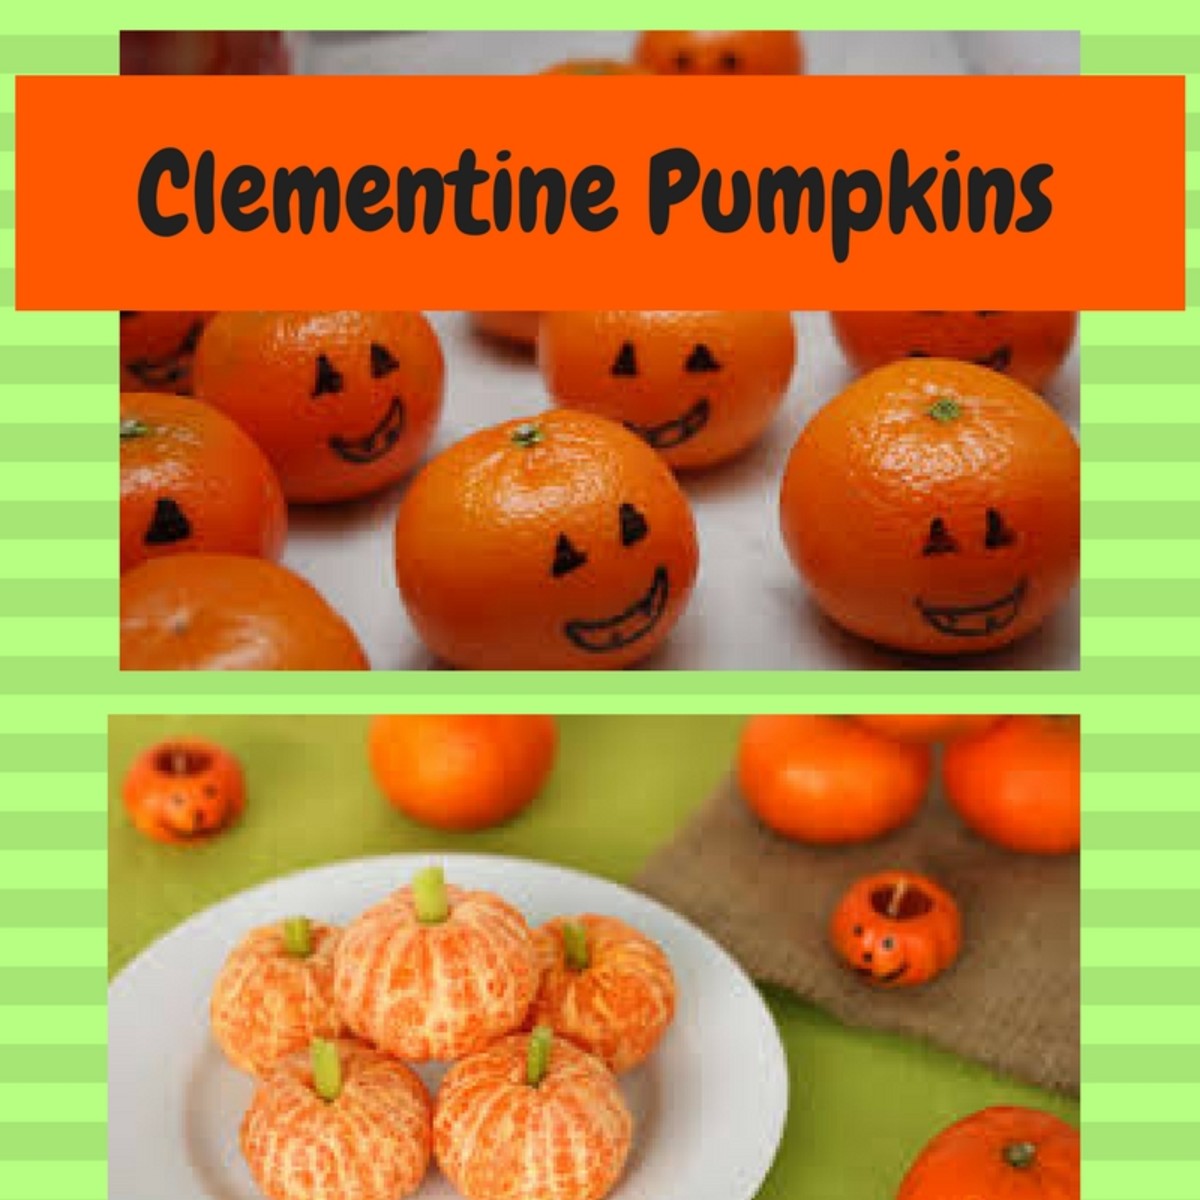 Clementine pumpkins